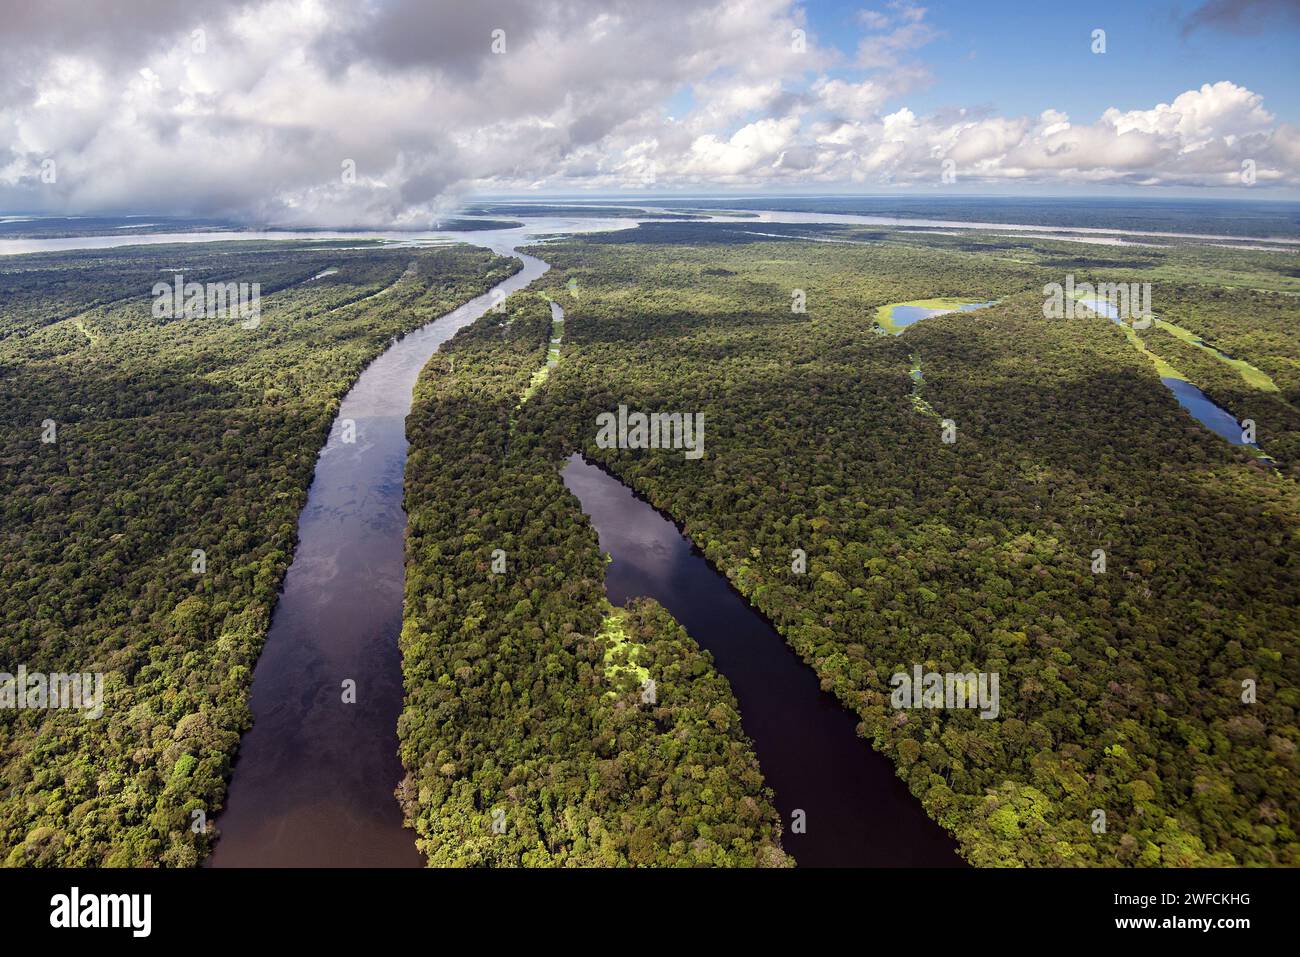 Aus der Vogelperspektive des Japura und des Amazonaswaldes in der nachhaltigen Entwicklung Mamiraua - região do médio curso do rio Solimões Stockfoto